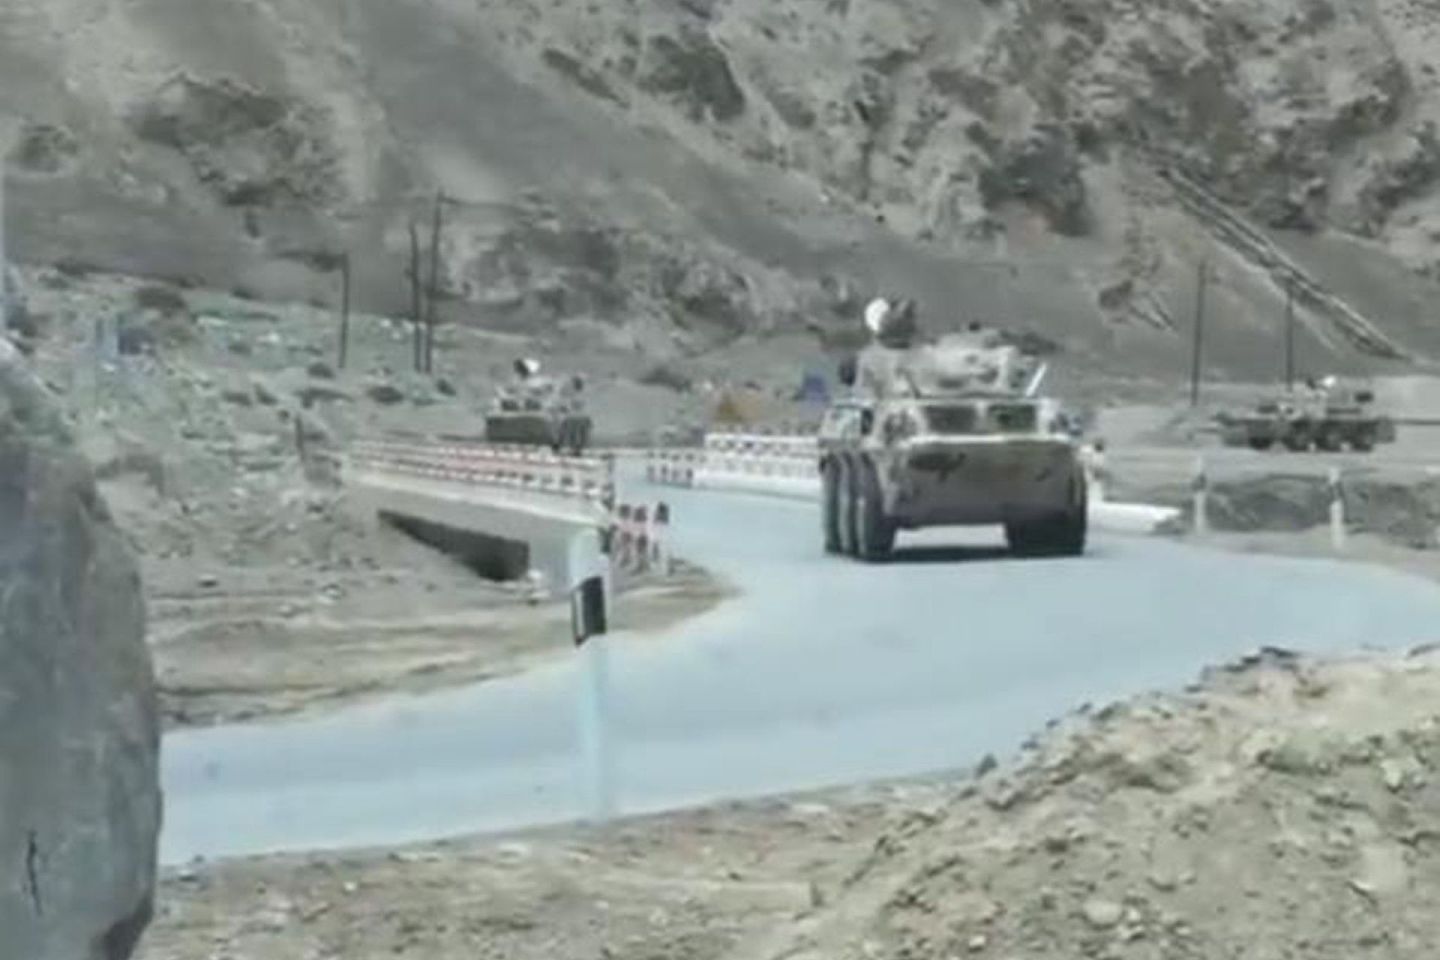 解放军现在在中印边境的军事能力已经大幅提升。图为解放军装甲车在青藏高原公路上疾驰。（网络视频截图）